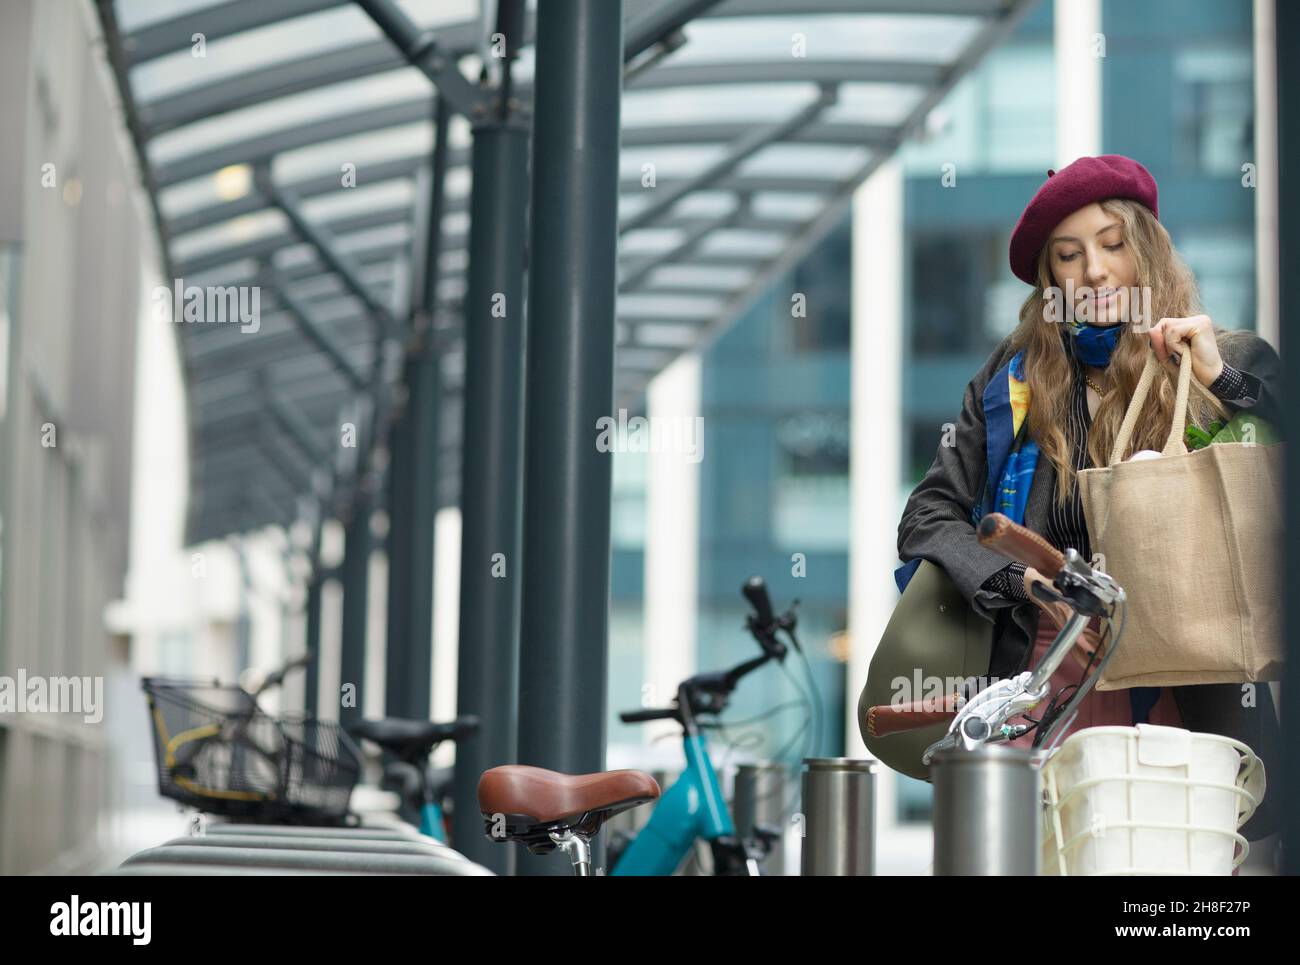 Junge Frau, die in der Stadt Lebensmittel in einen Fahrradwagen legt Stockfoto